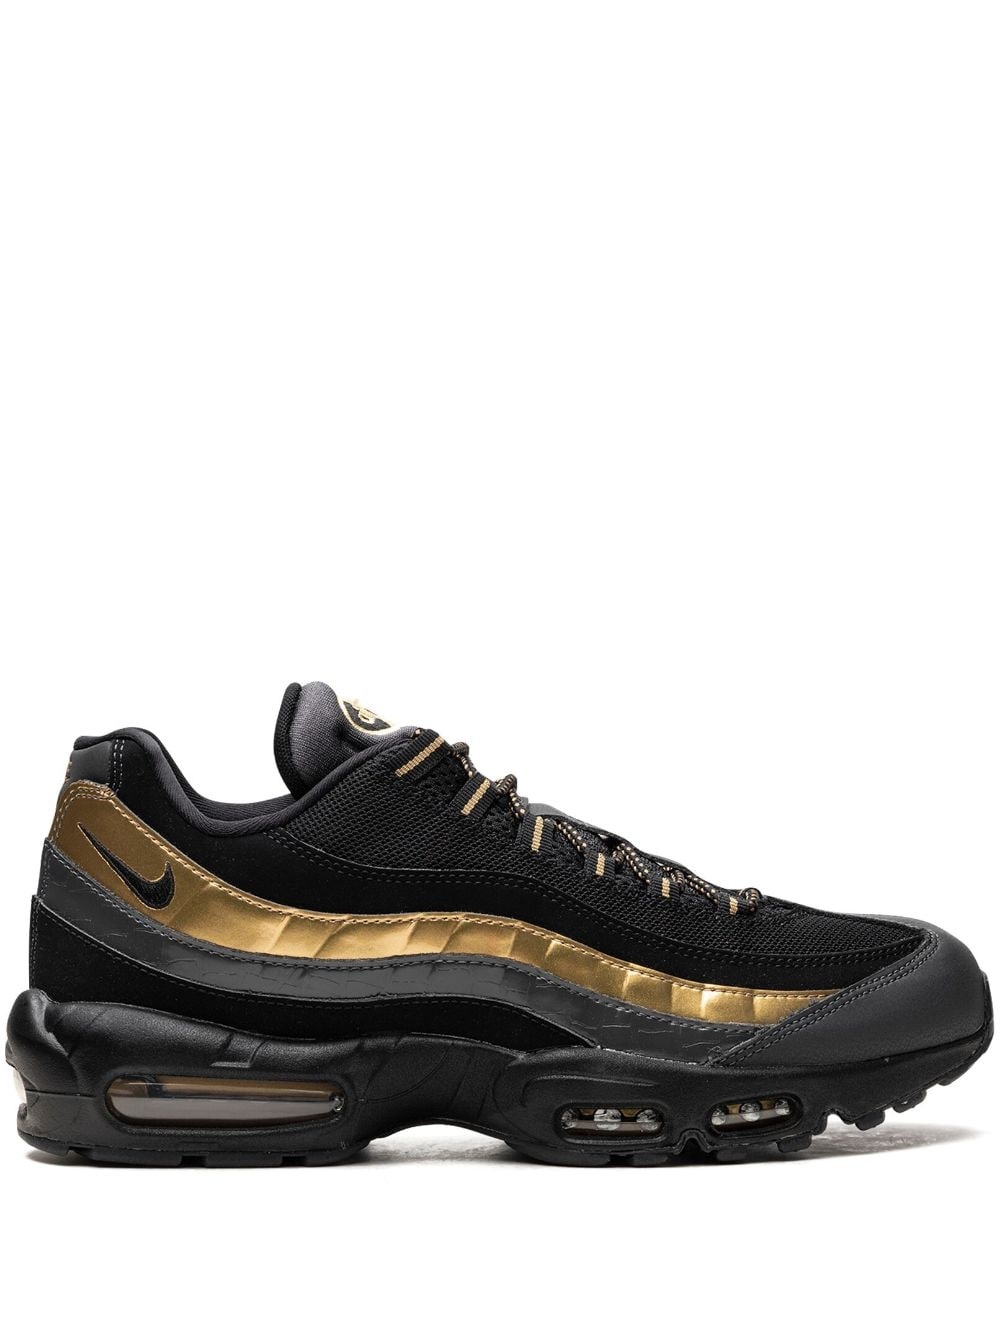 Air Max 95 Premium "Black/Metallic Gold/Anthracite" sneakers - 1